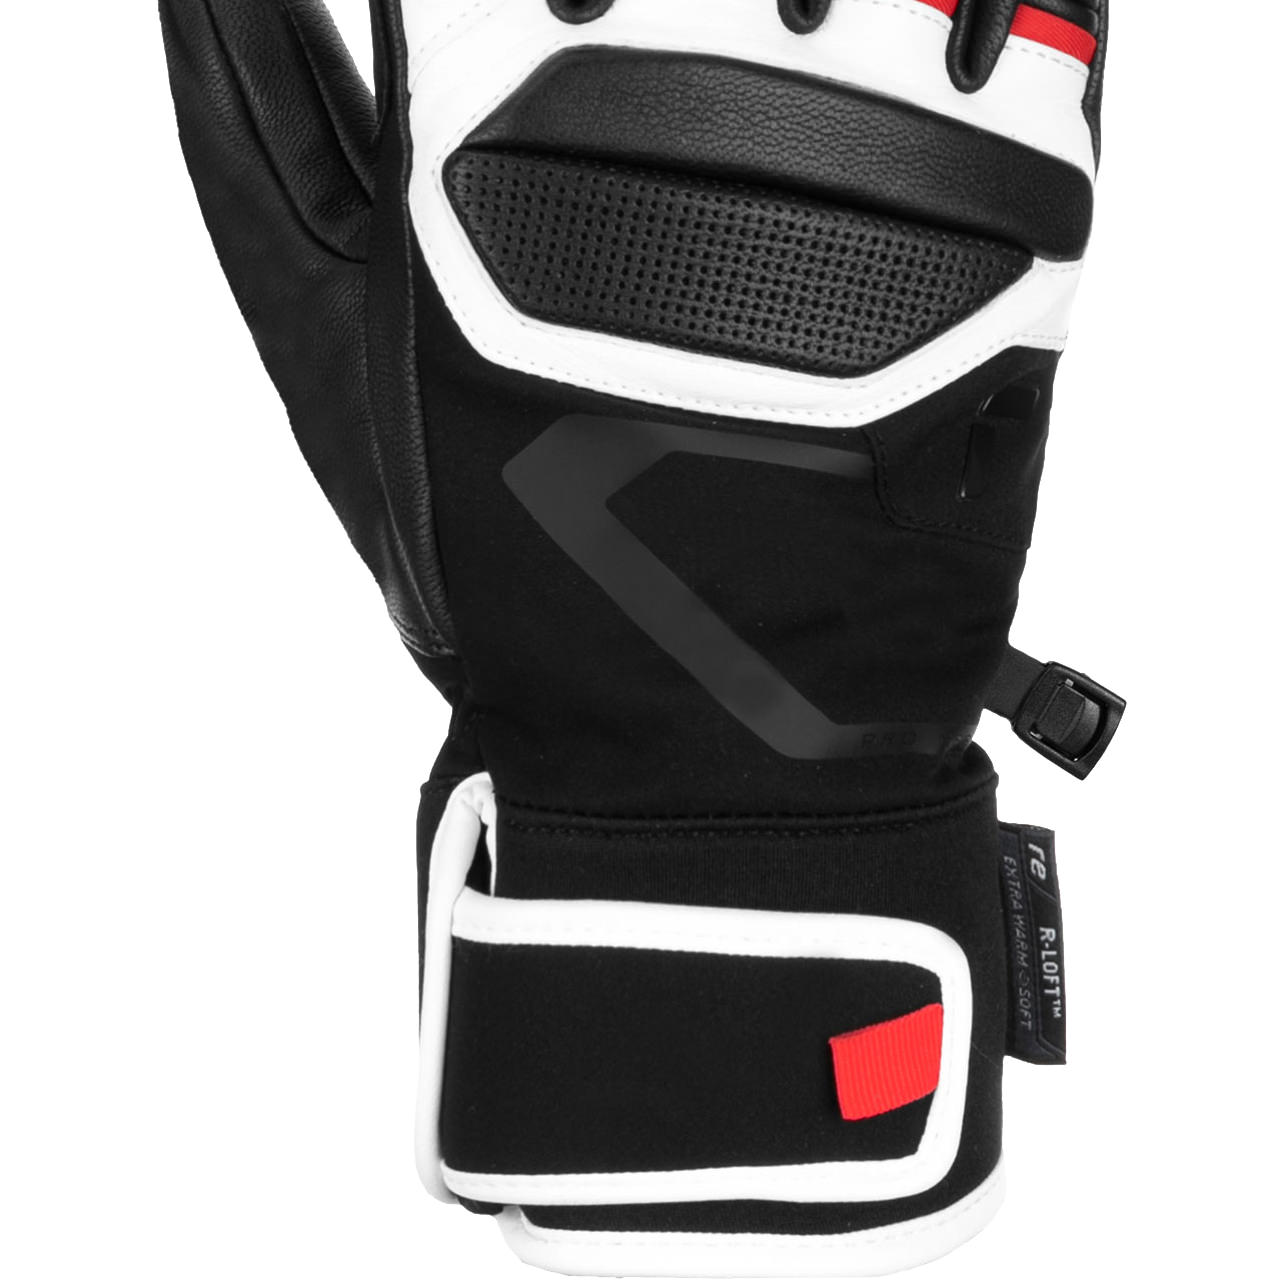 Men skiwear | Alpine PRO RC |Men Skiwear Glove black/white/fire | Reusch red Skis